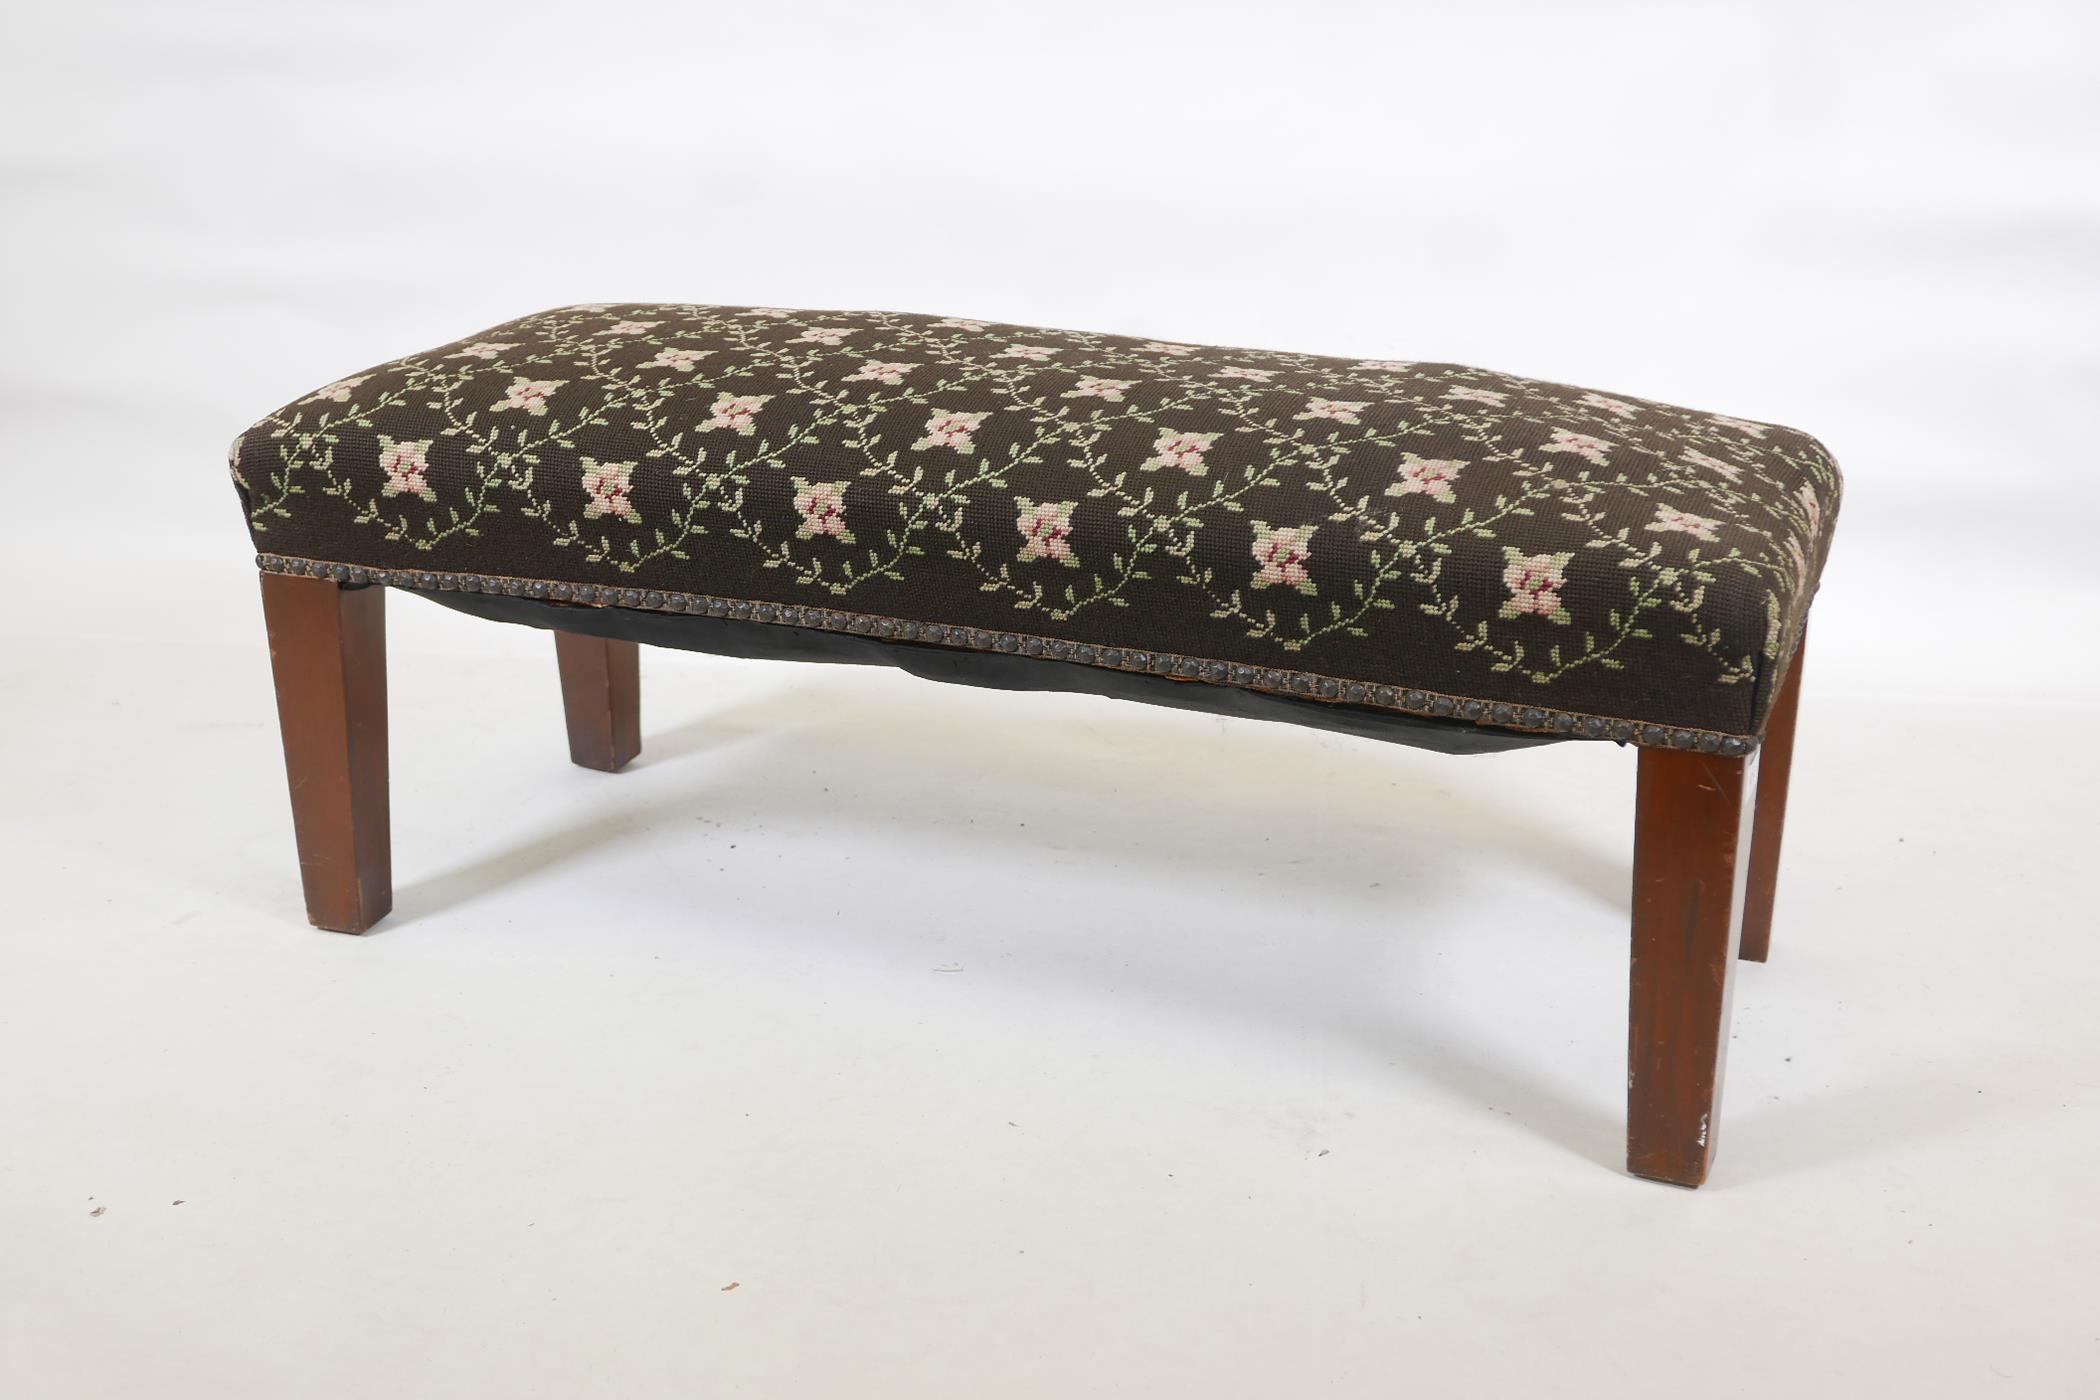 A mahogany window seat/stool, 16" x 29" x 15"